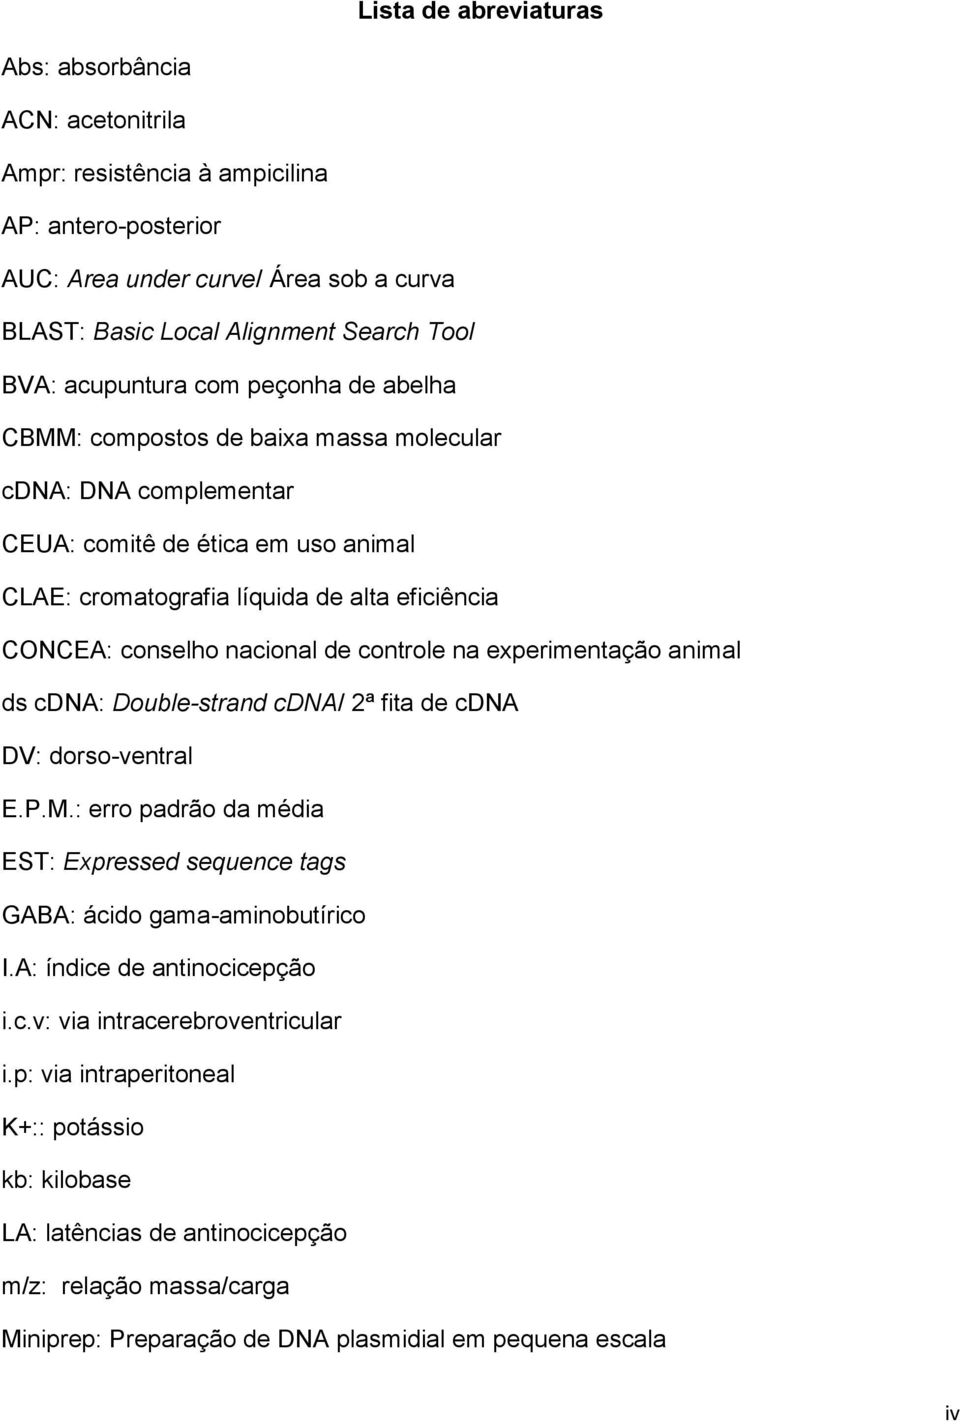 nacional de controle na experimentação animal ds cdna: Double-strand cdna/ 2ª fita de cdna DV: dorso-ventral E.P.M.: erro padrão da média EST: Expressed sequence tags GABA: ácido gama-aminobutírico I.